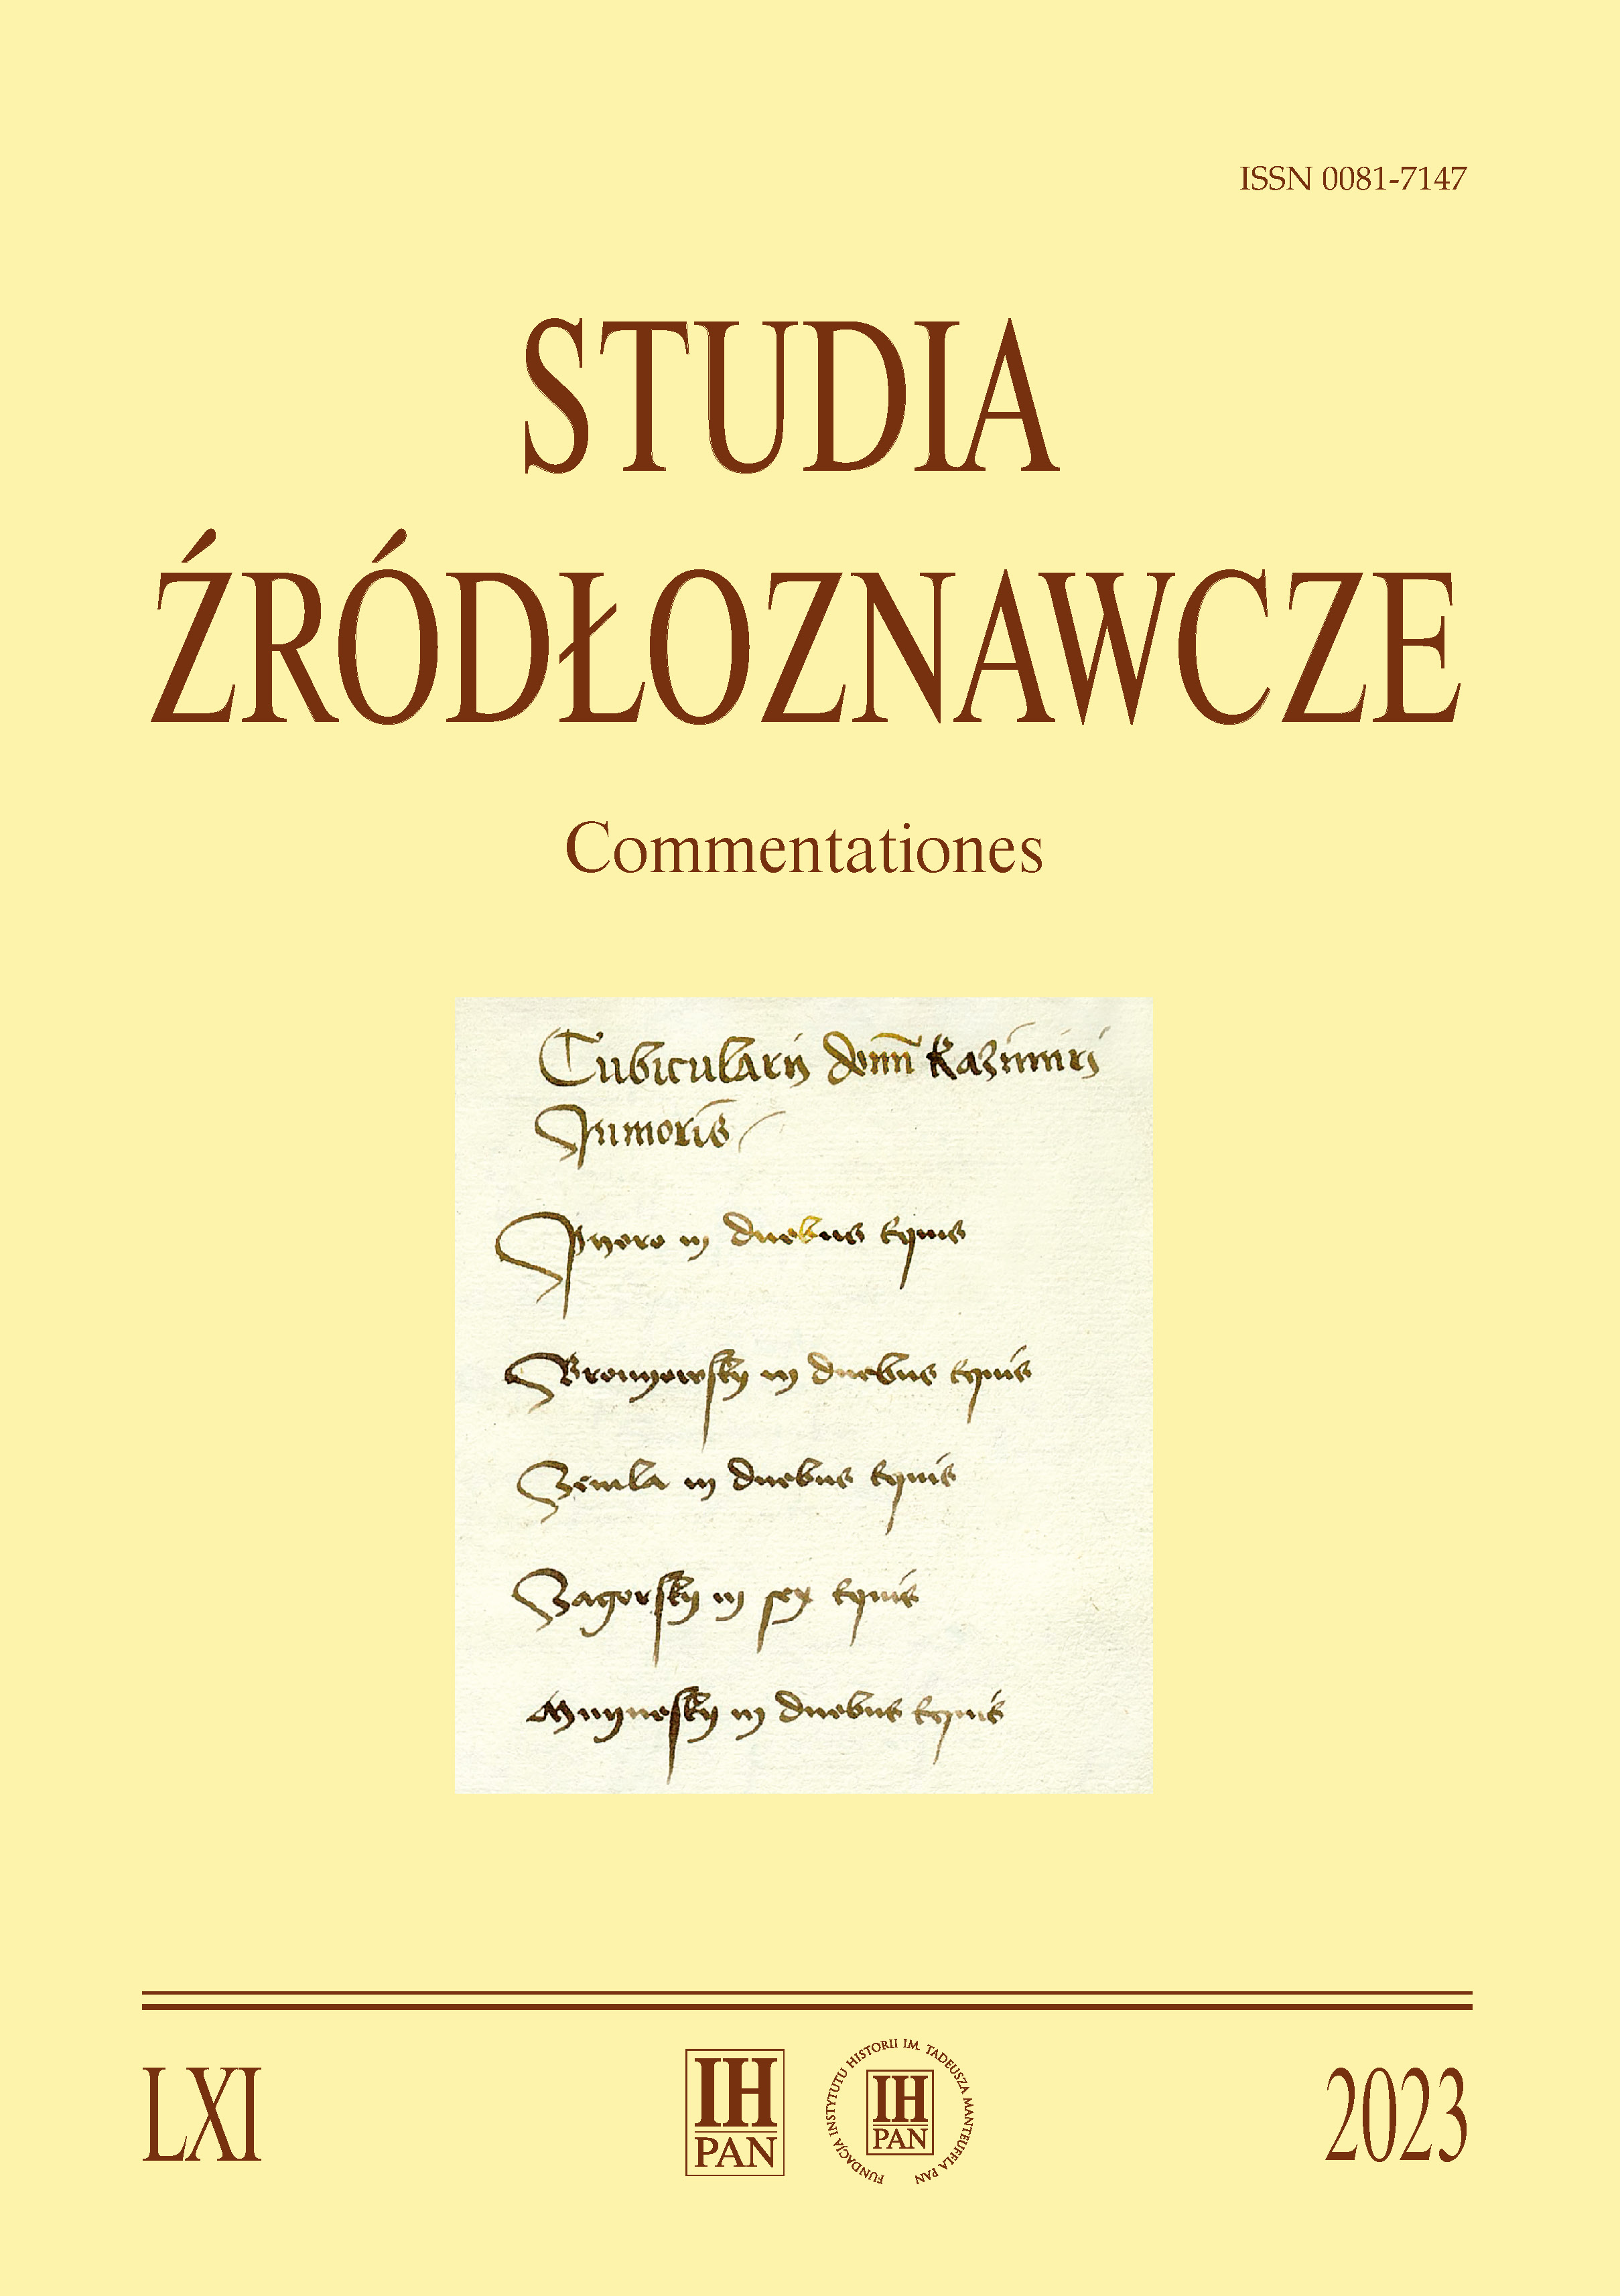 Nagroda „Studiów Źródłoznawczych”
im. Stefana Krzysztofa Kuczyńskiego za 2022 r.